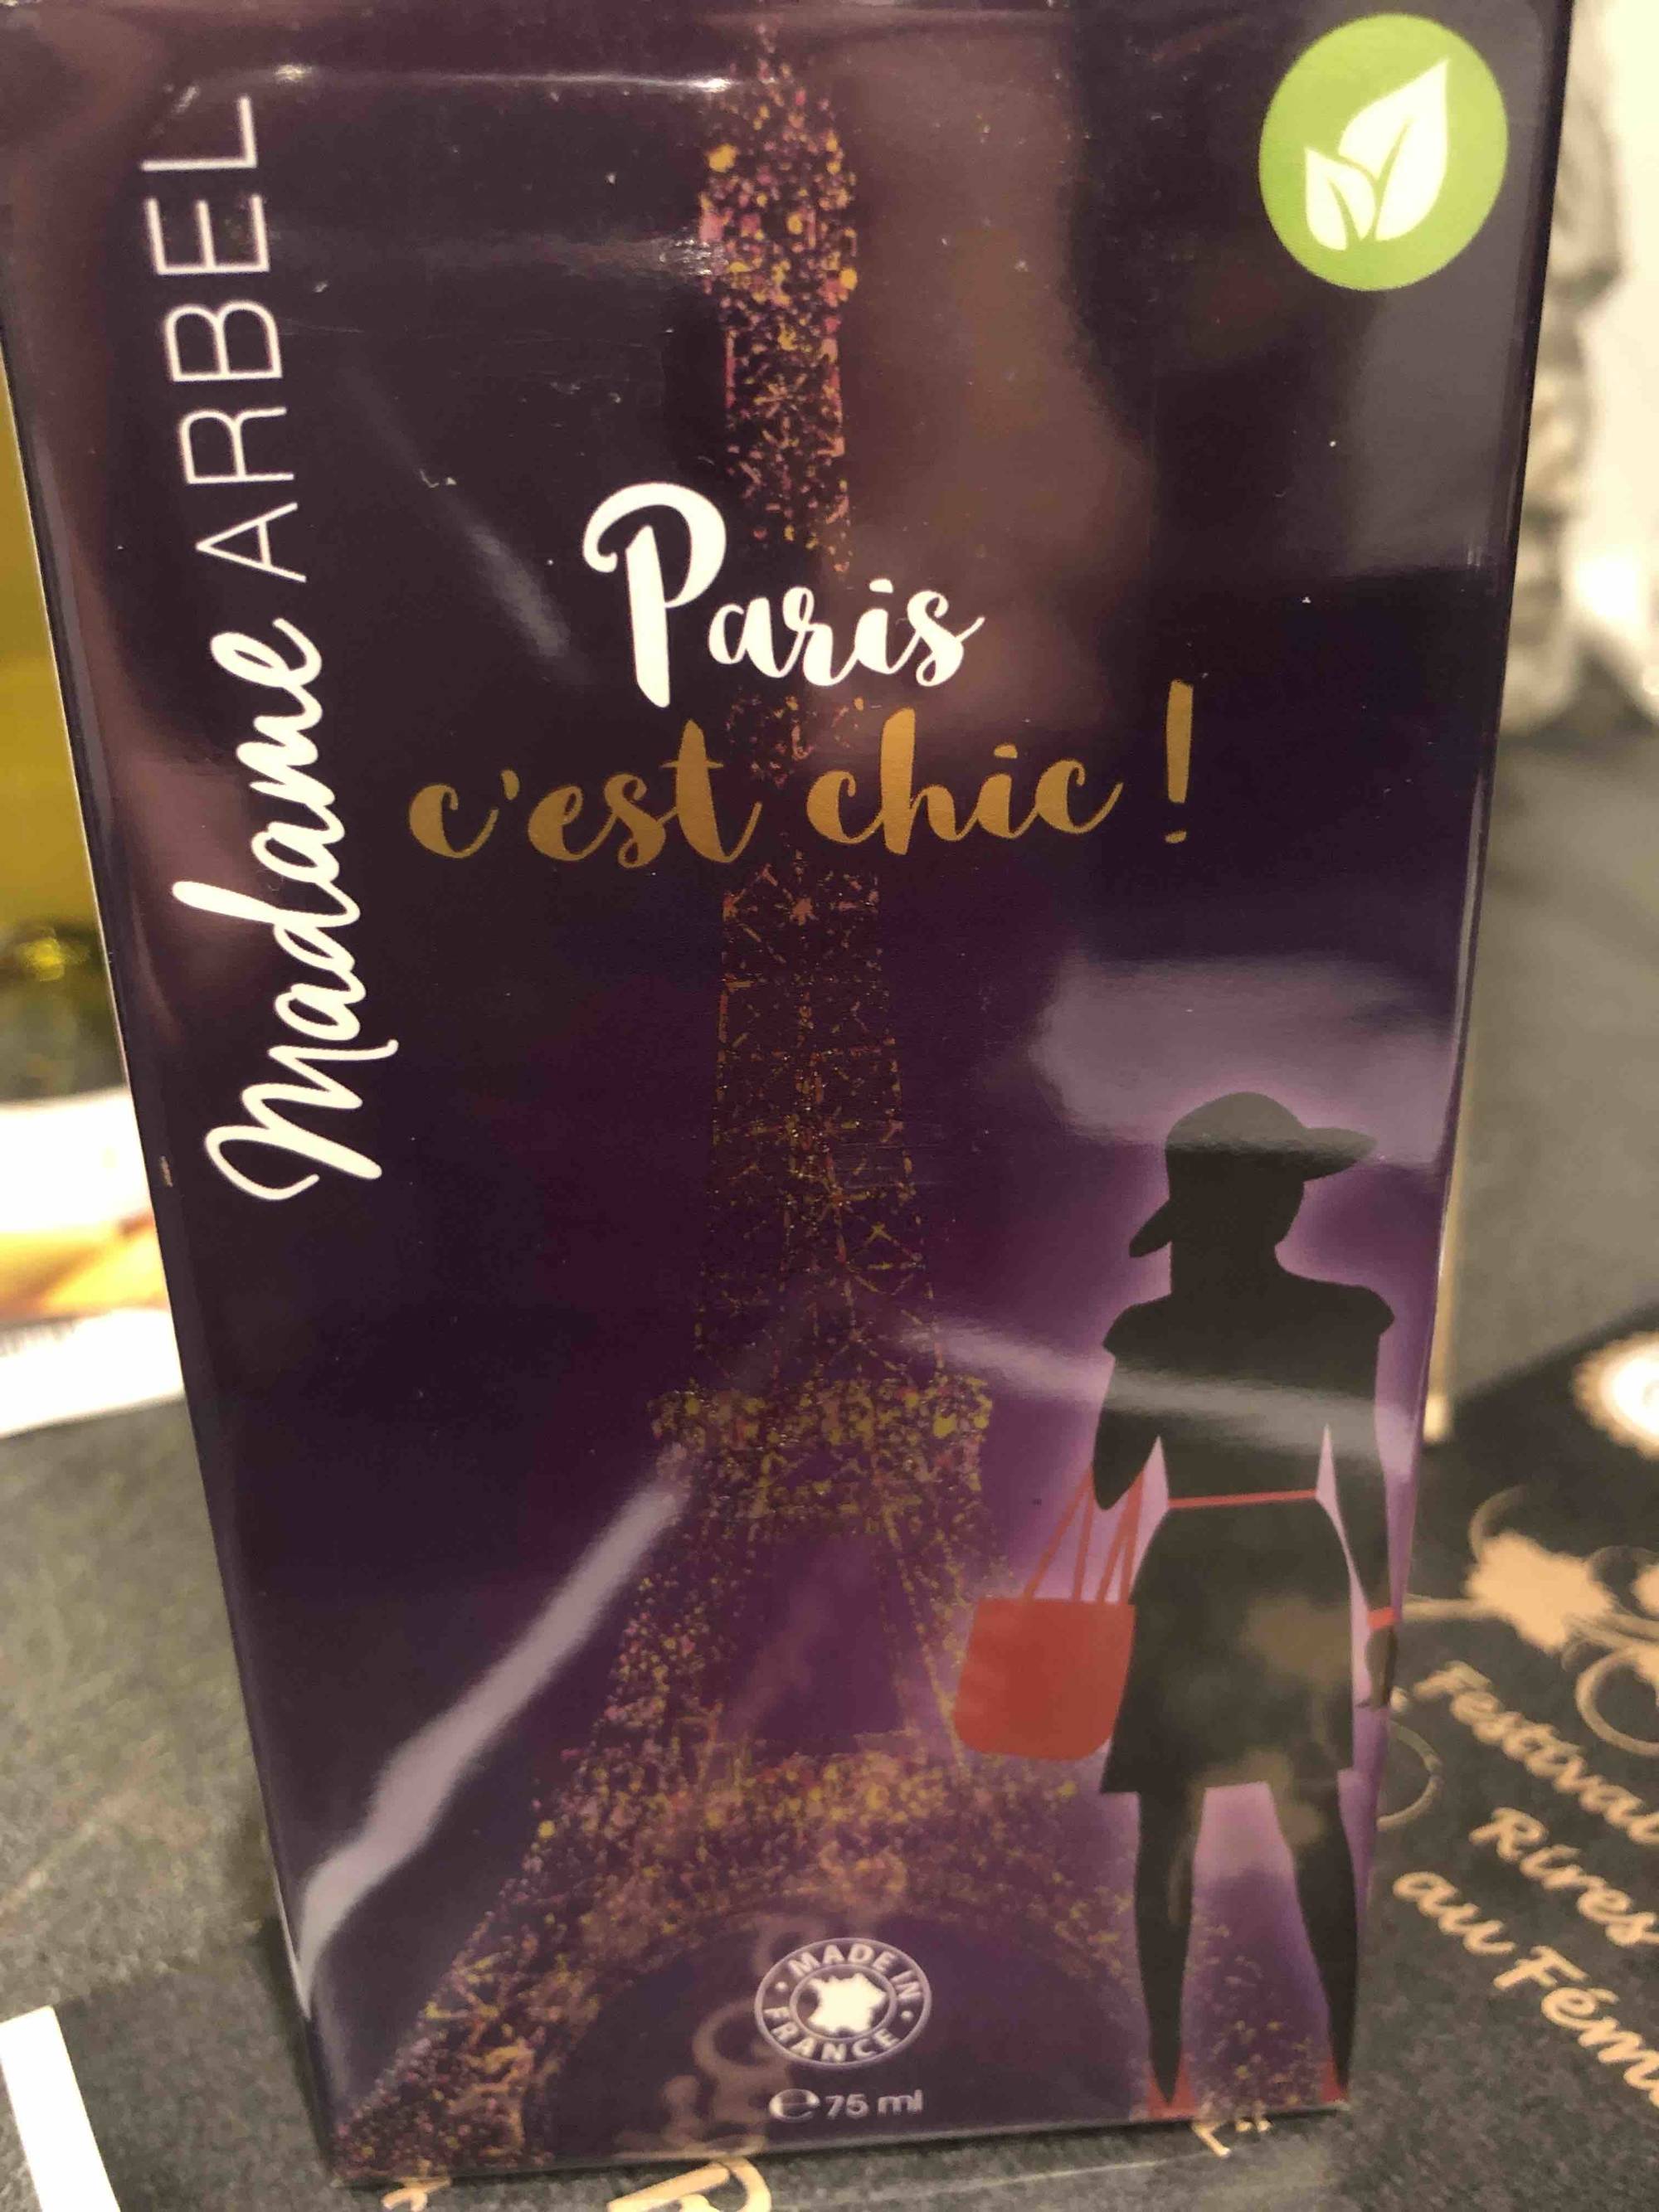 CHRISTINE ARBEL - Madame Paris c'est chic! - Parfum nouvelle génération